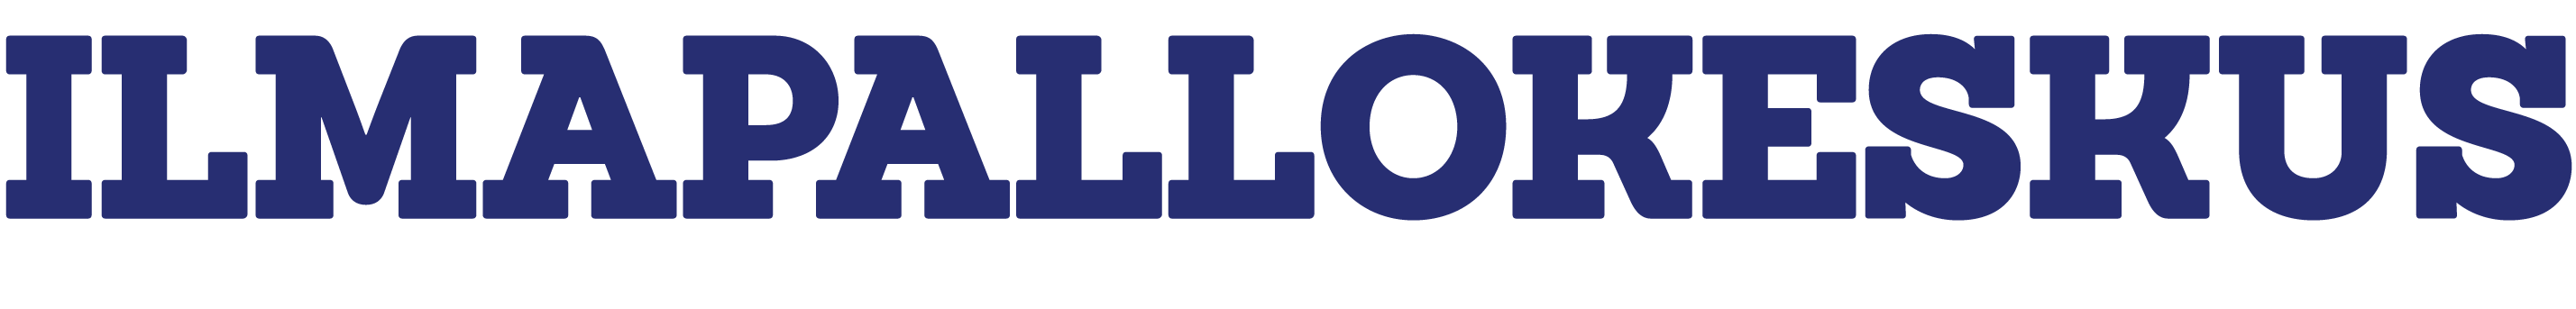 Ilmapallokeskus-teksti-logo_1_